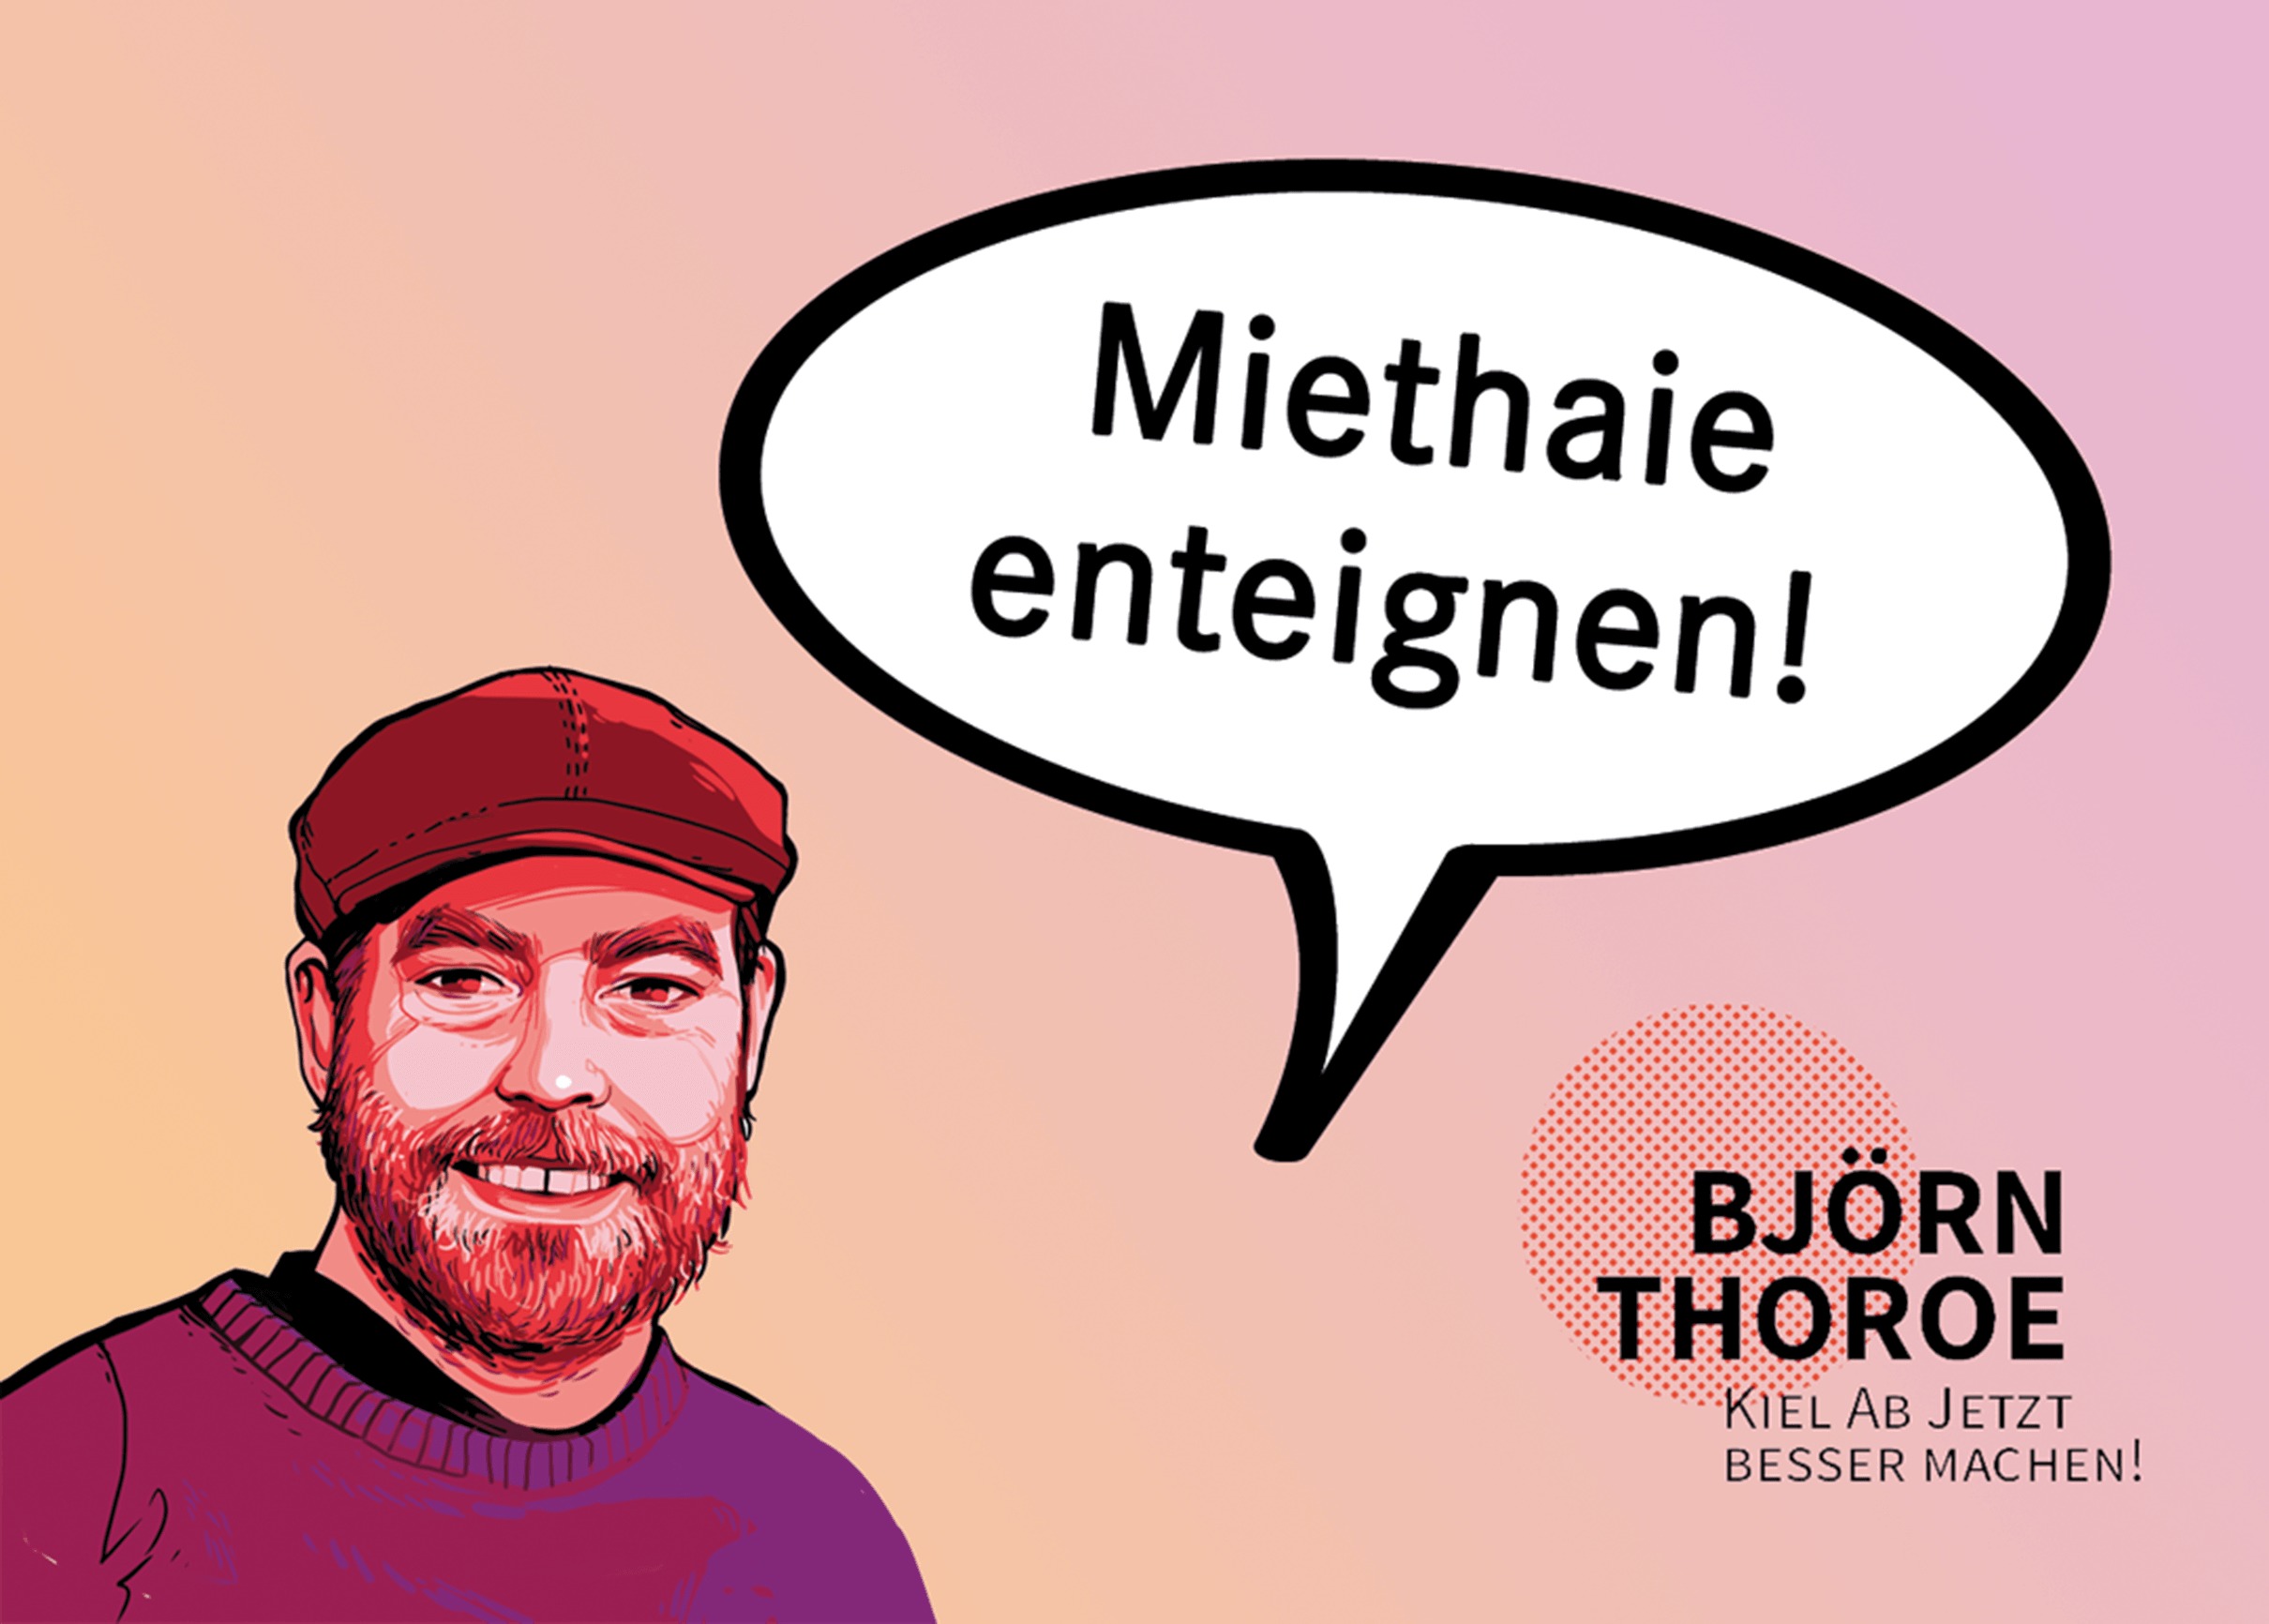 Björn Thoroe als Comicfigur, in der Sprechblase steht: "Miethaie enteignen!"